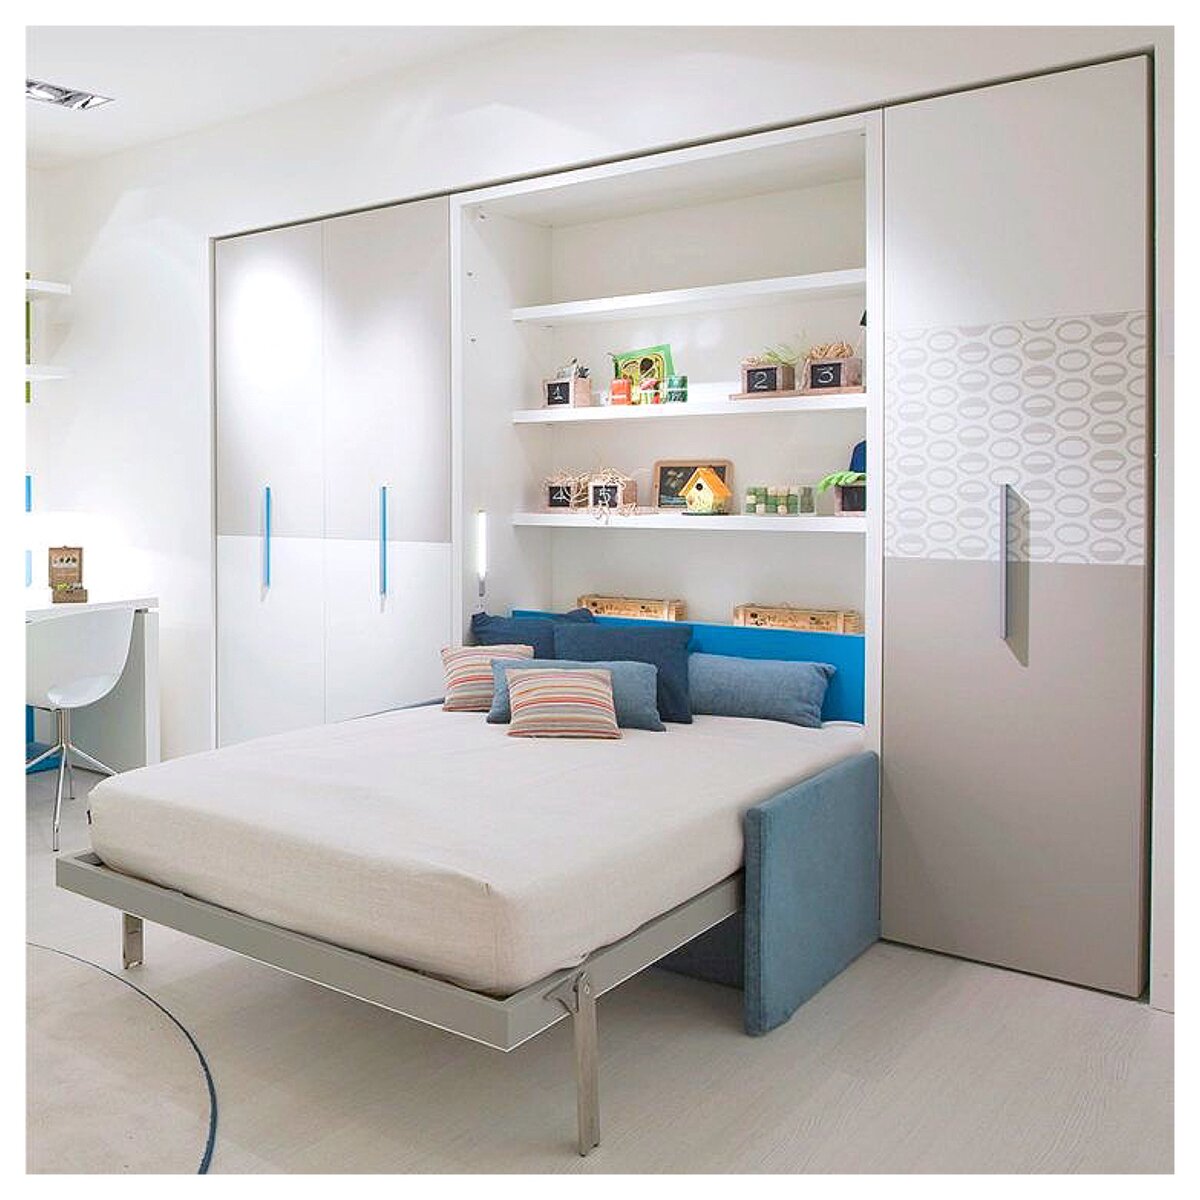 Топ-7 дизайн идей, как отделить спальное место от общей комнаты можно, кровать, место, очень, закрыть, спальное, отделить, перегородки, шкафа, просто, гостей, выполняют, общей, хорошо, такая, хочется, перегородку, подиум, вариант, места